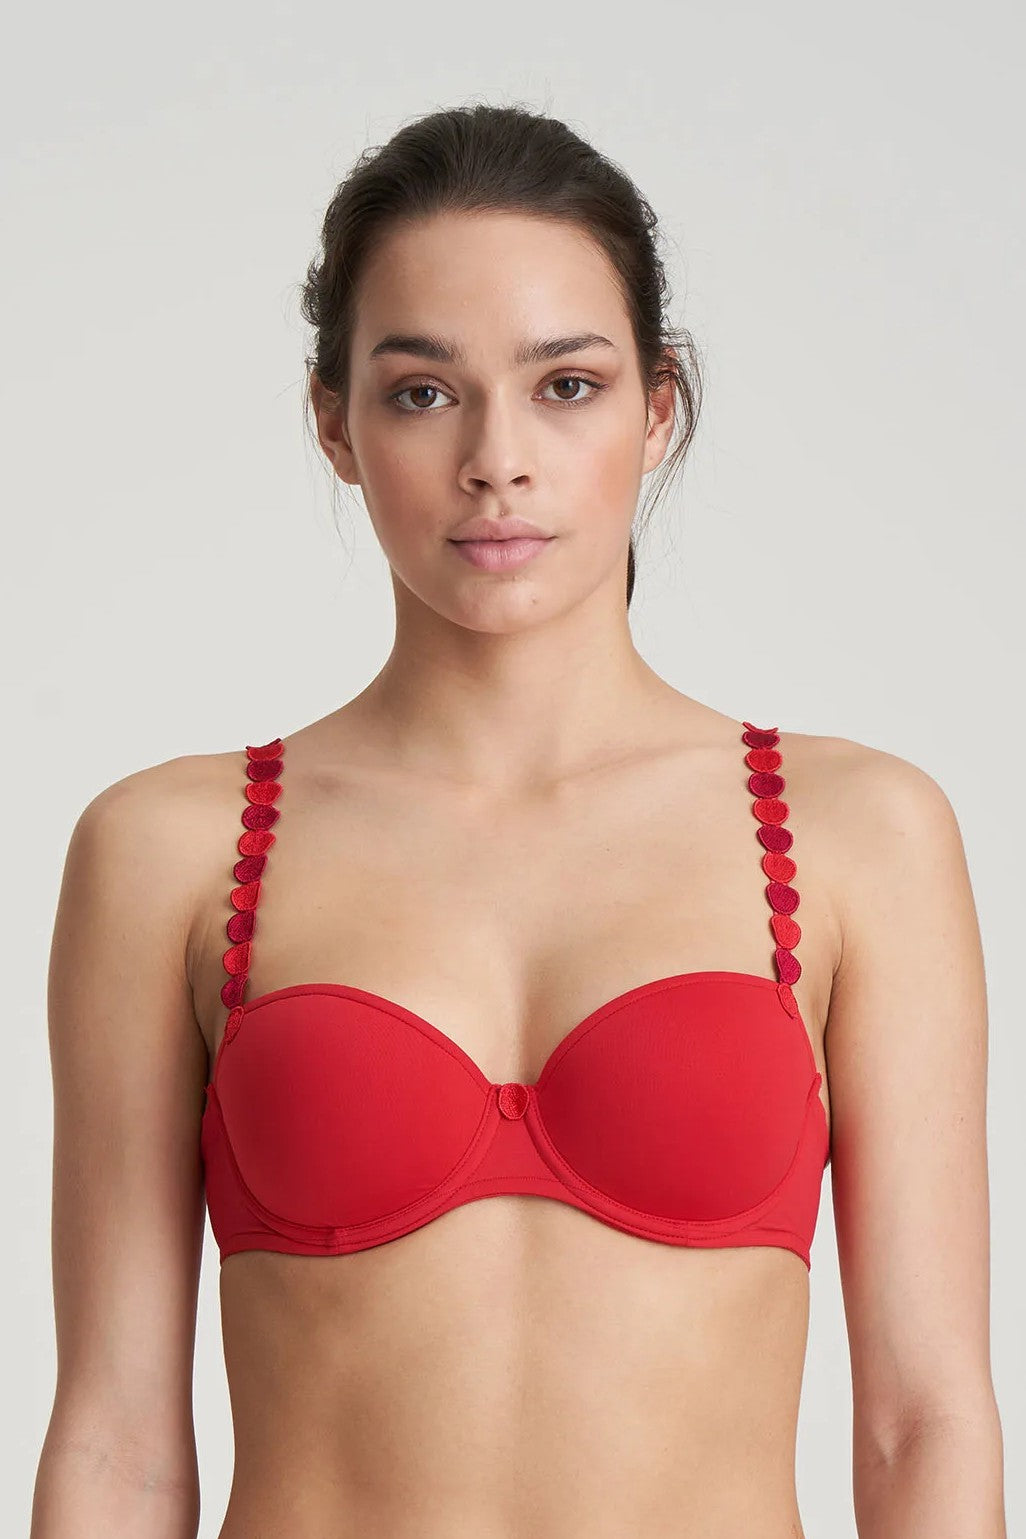 Balconette bras: buy balconette bra for Women online at Bralissimo